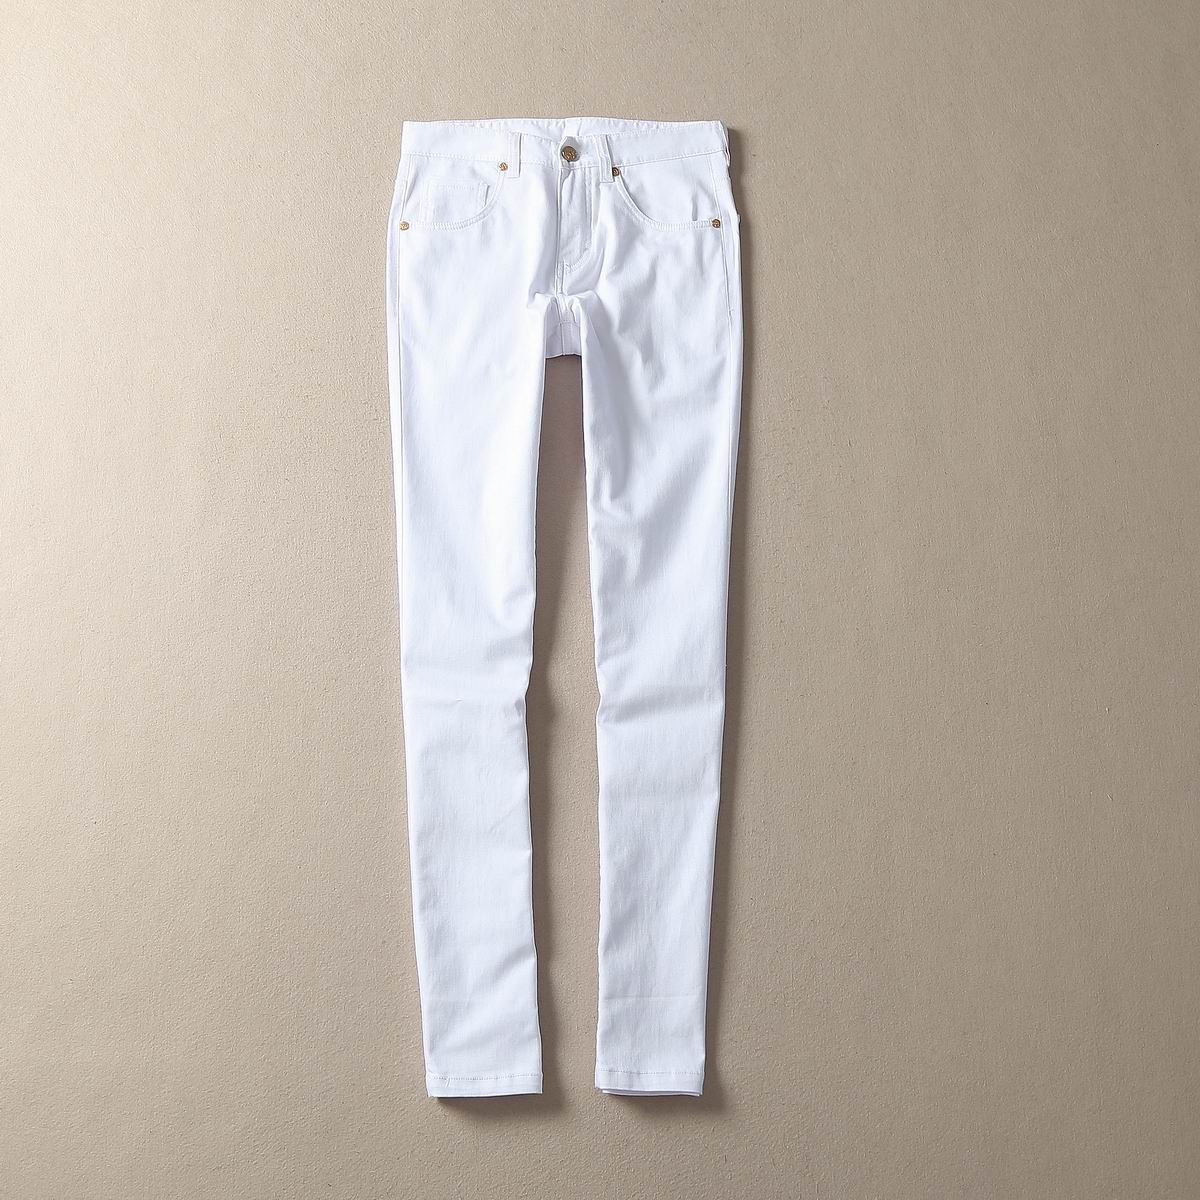 白牛仔裤直筒-返利商品分类列表-67比购网!